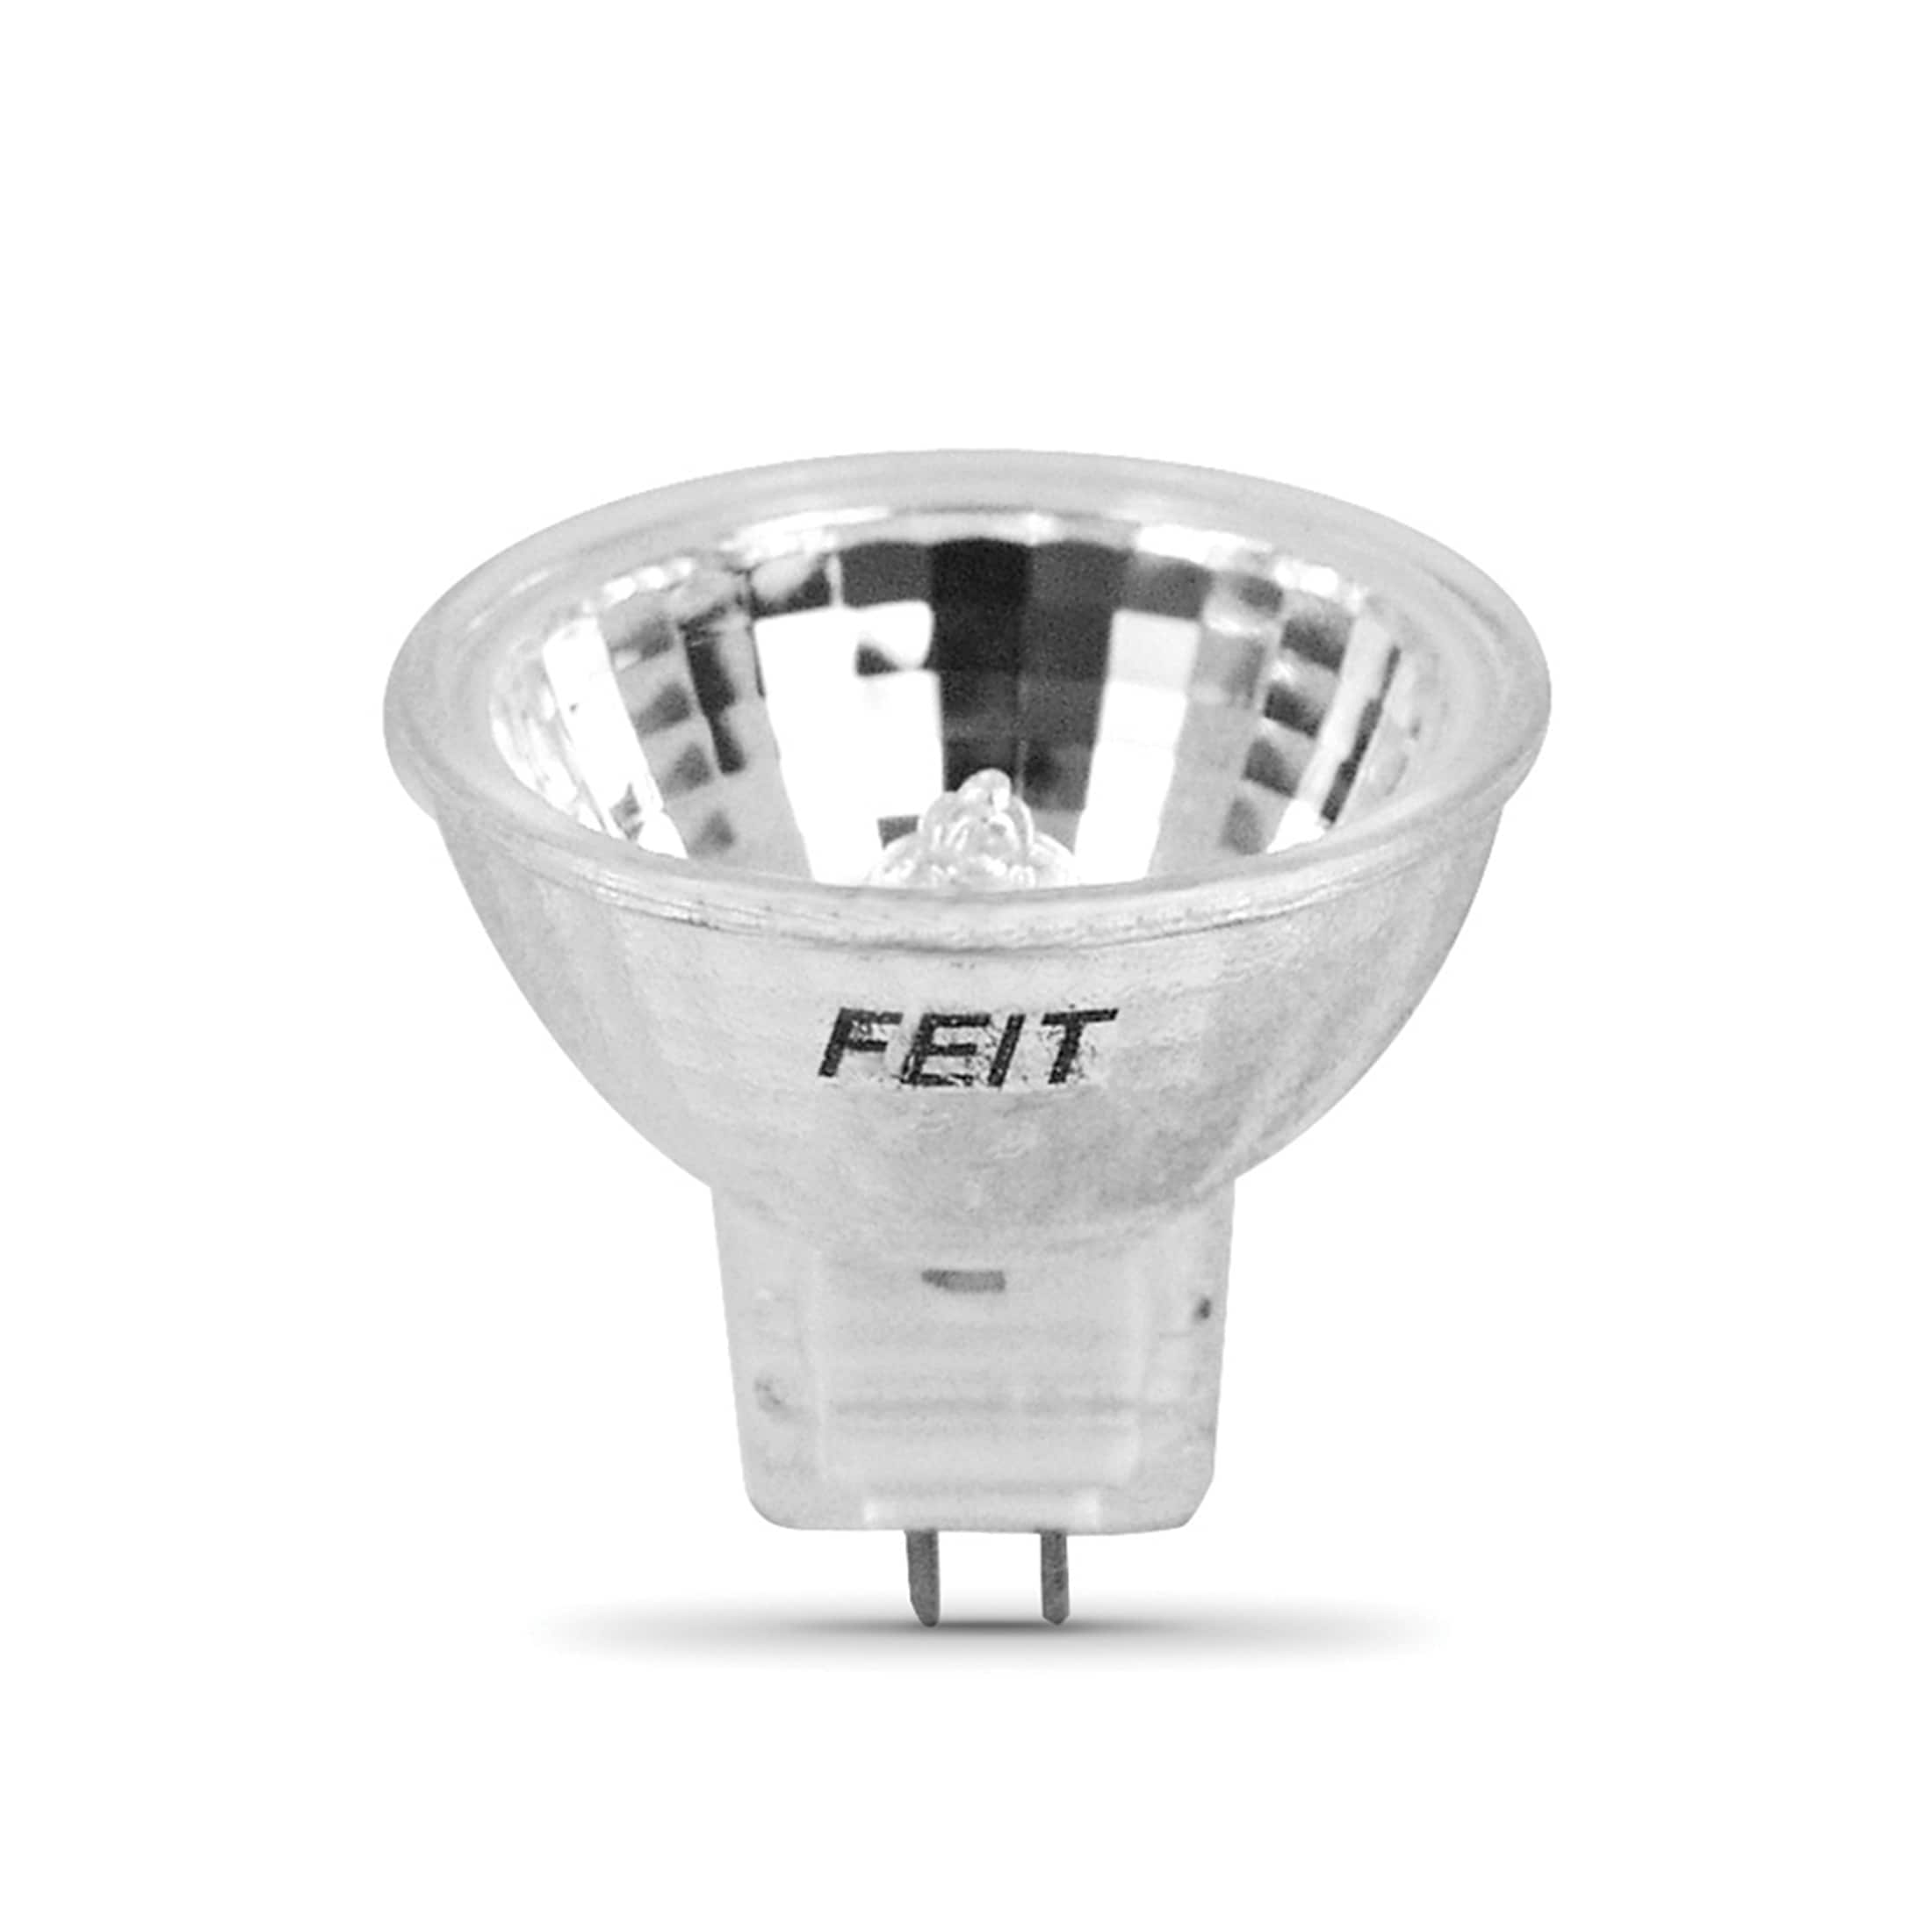 GU10 LED Replacement Light Bulbs, 3 Watt LED Spot Light, Replace 20 Watt  Halogen Bulbs